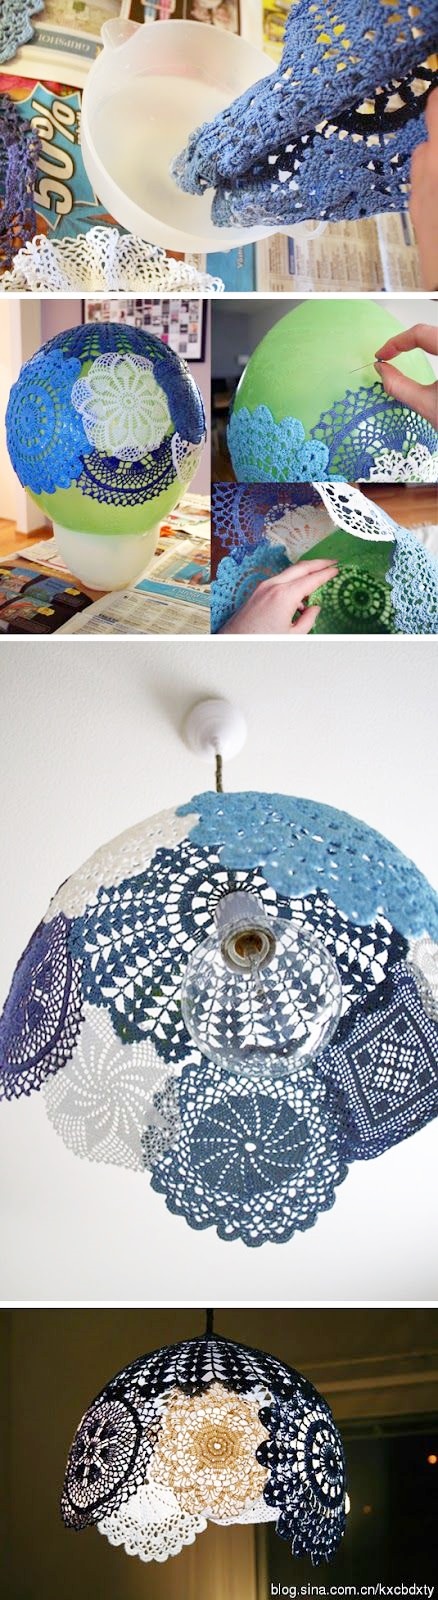 decoracao-com-crochet (6)